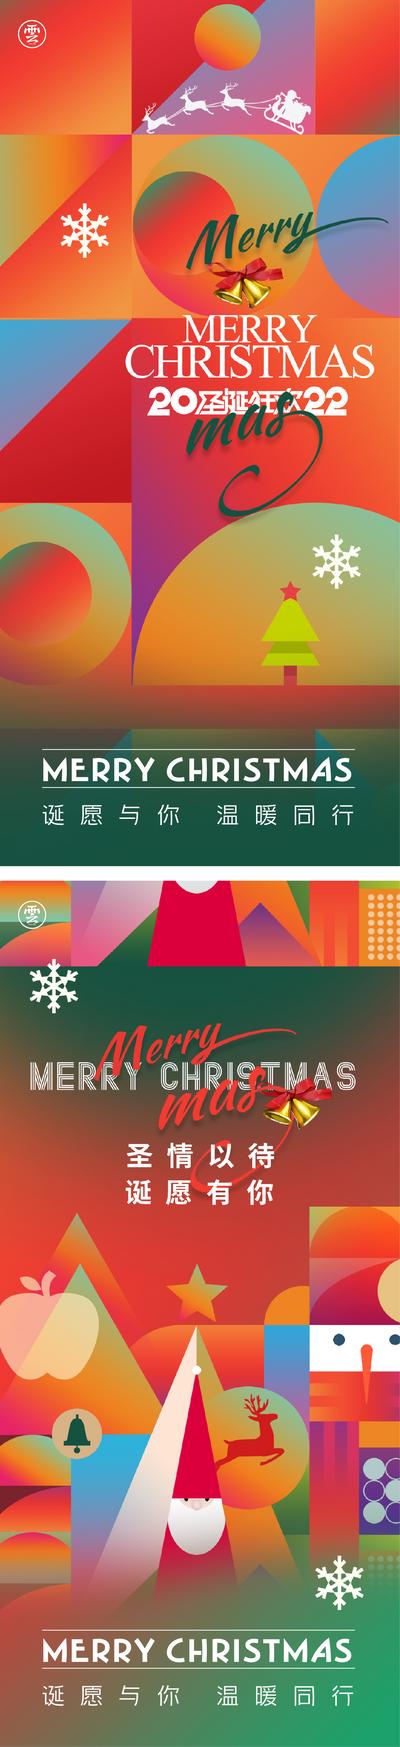 【南门网】海报 公历节日 圣诞节 平安夜 圣诞老人 麋鹿 雪花 色块 扁平化